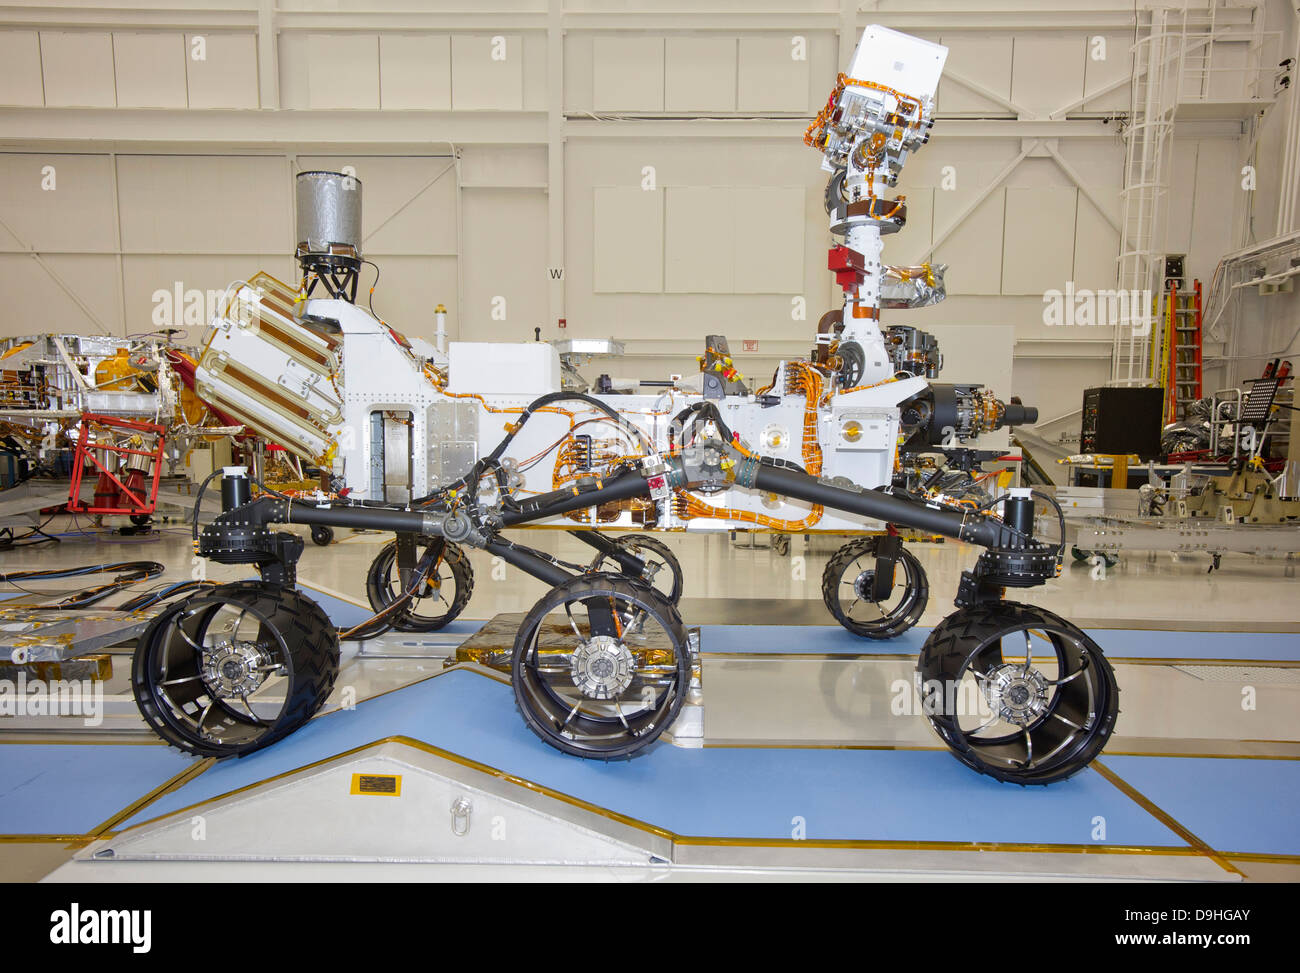 3 giugno 2011 - La NASA Mars Science Laboratory rover, curiosità, durante i test di mobilità all'interno della navicella spaziale Assemblaggio. Foto Stock